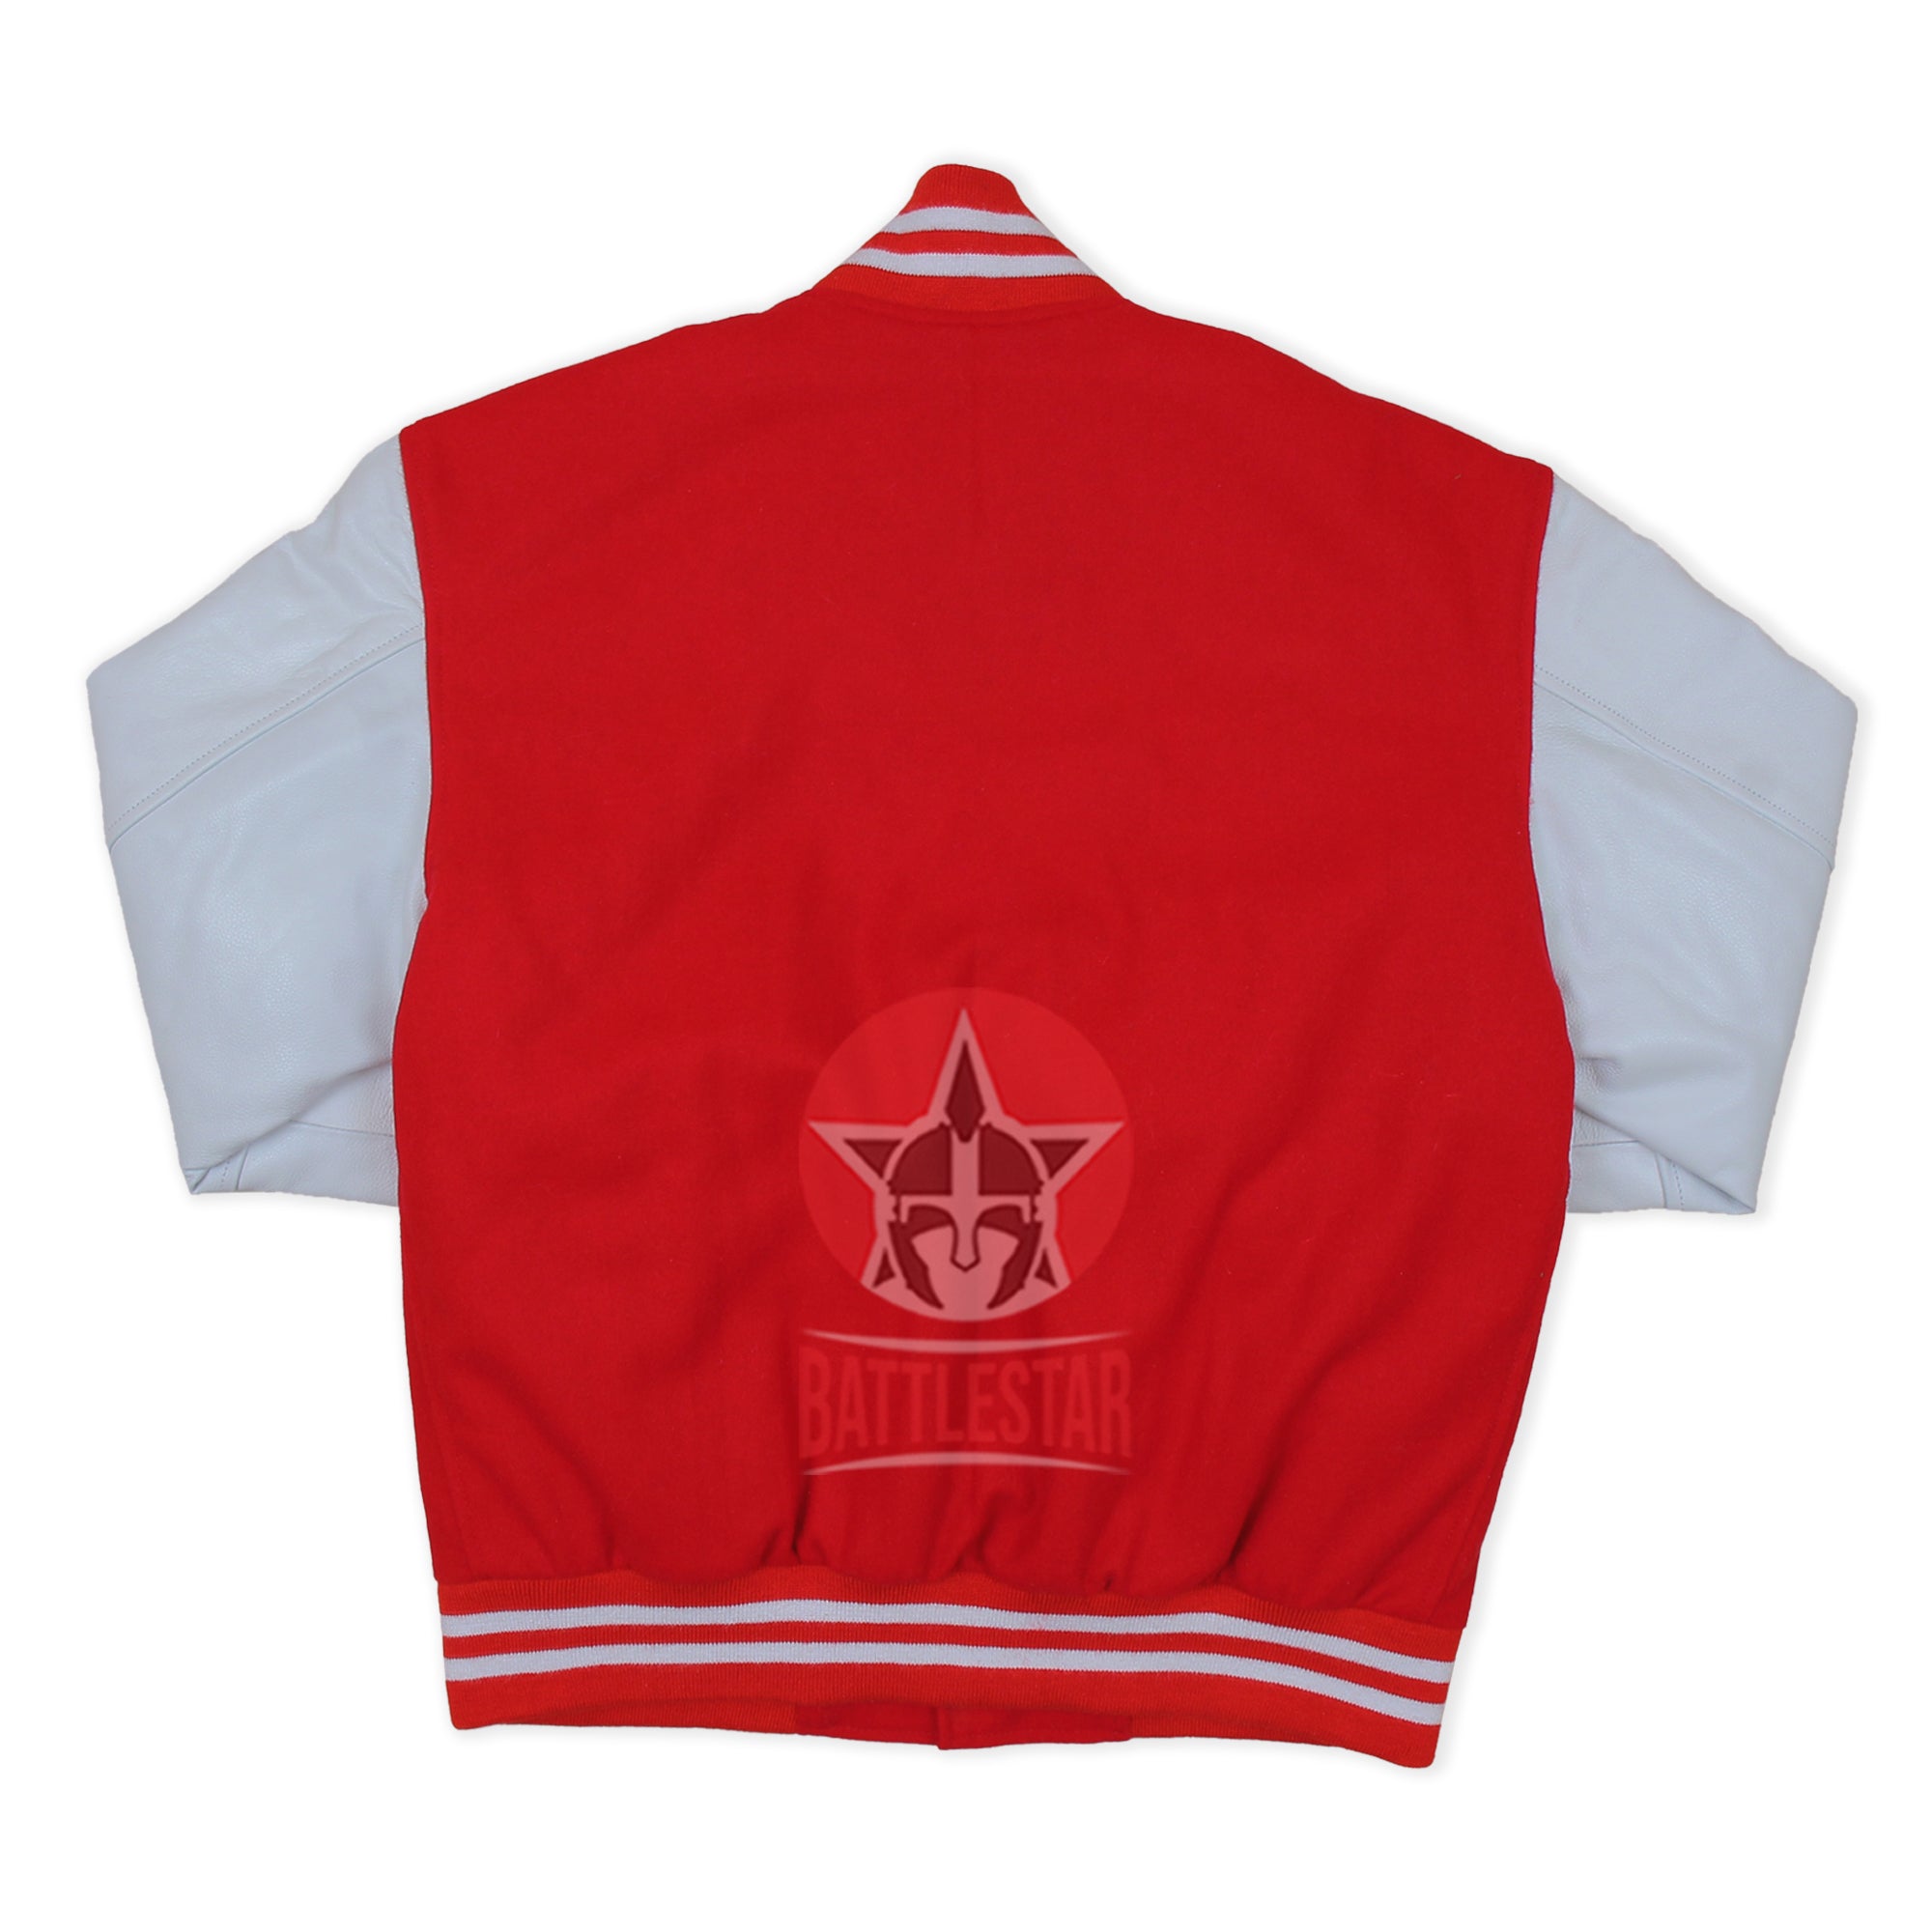 Jacketshop Jacket Retro Scarlet Red Wool White Leather Varsity Jackets